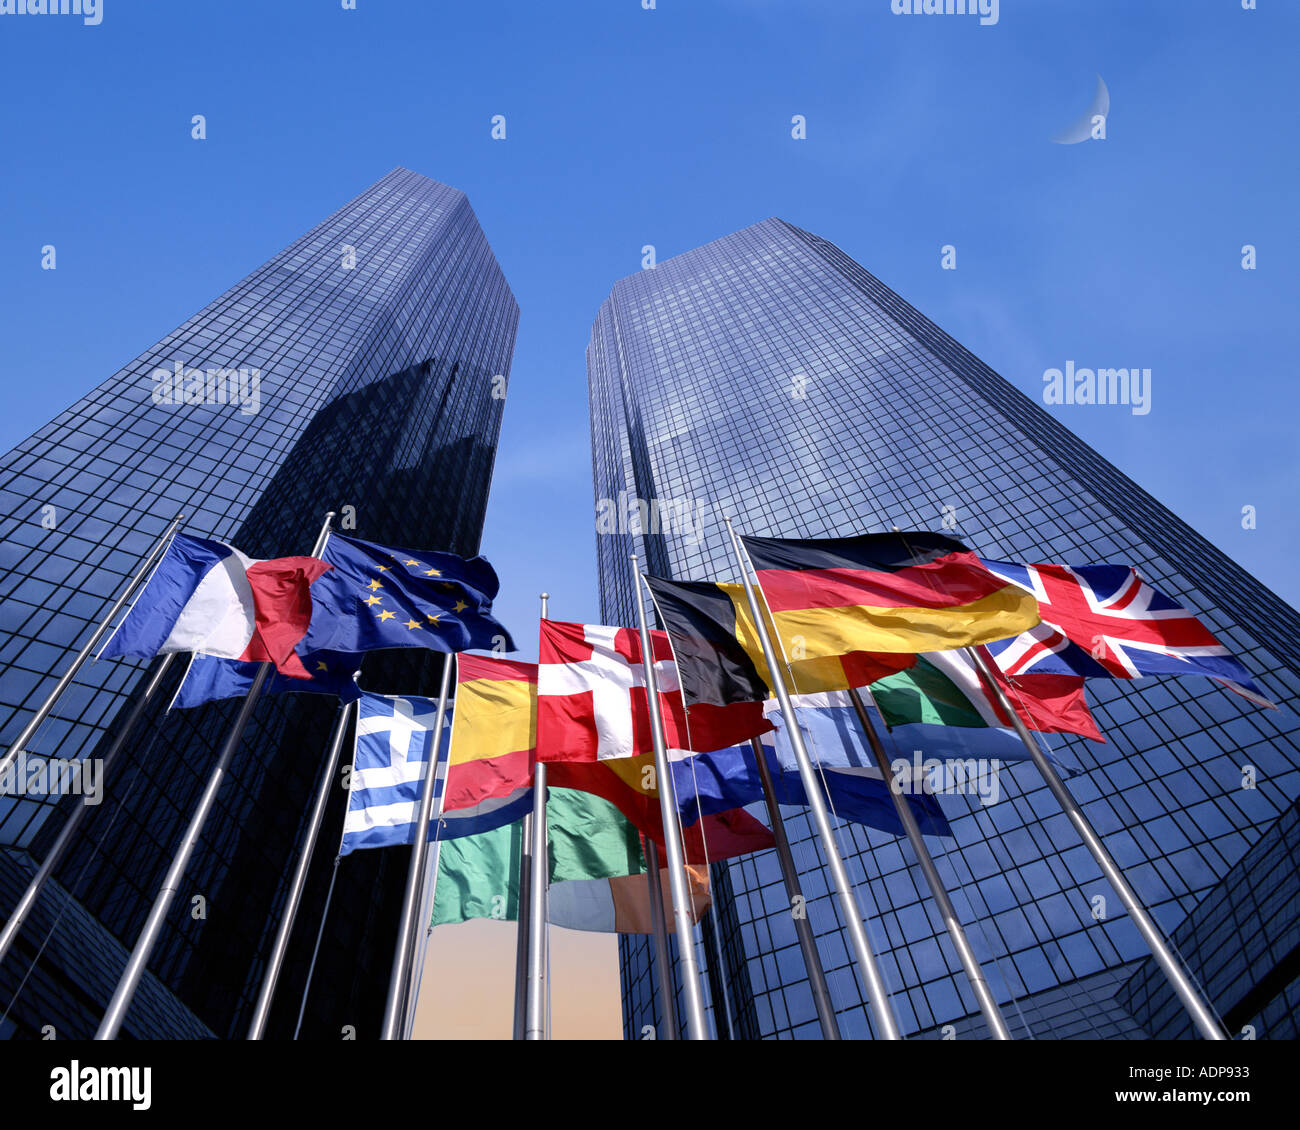 DE - HESSEN: The Flags of Europe below the Deutsche Bank in Frankfurt Stock Photo